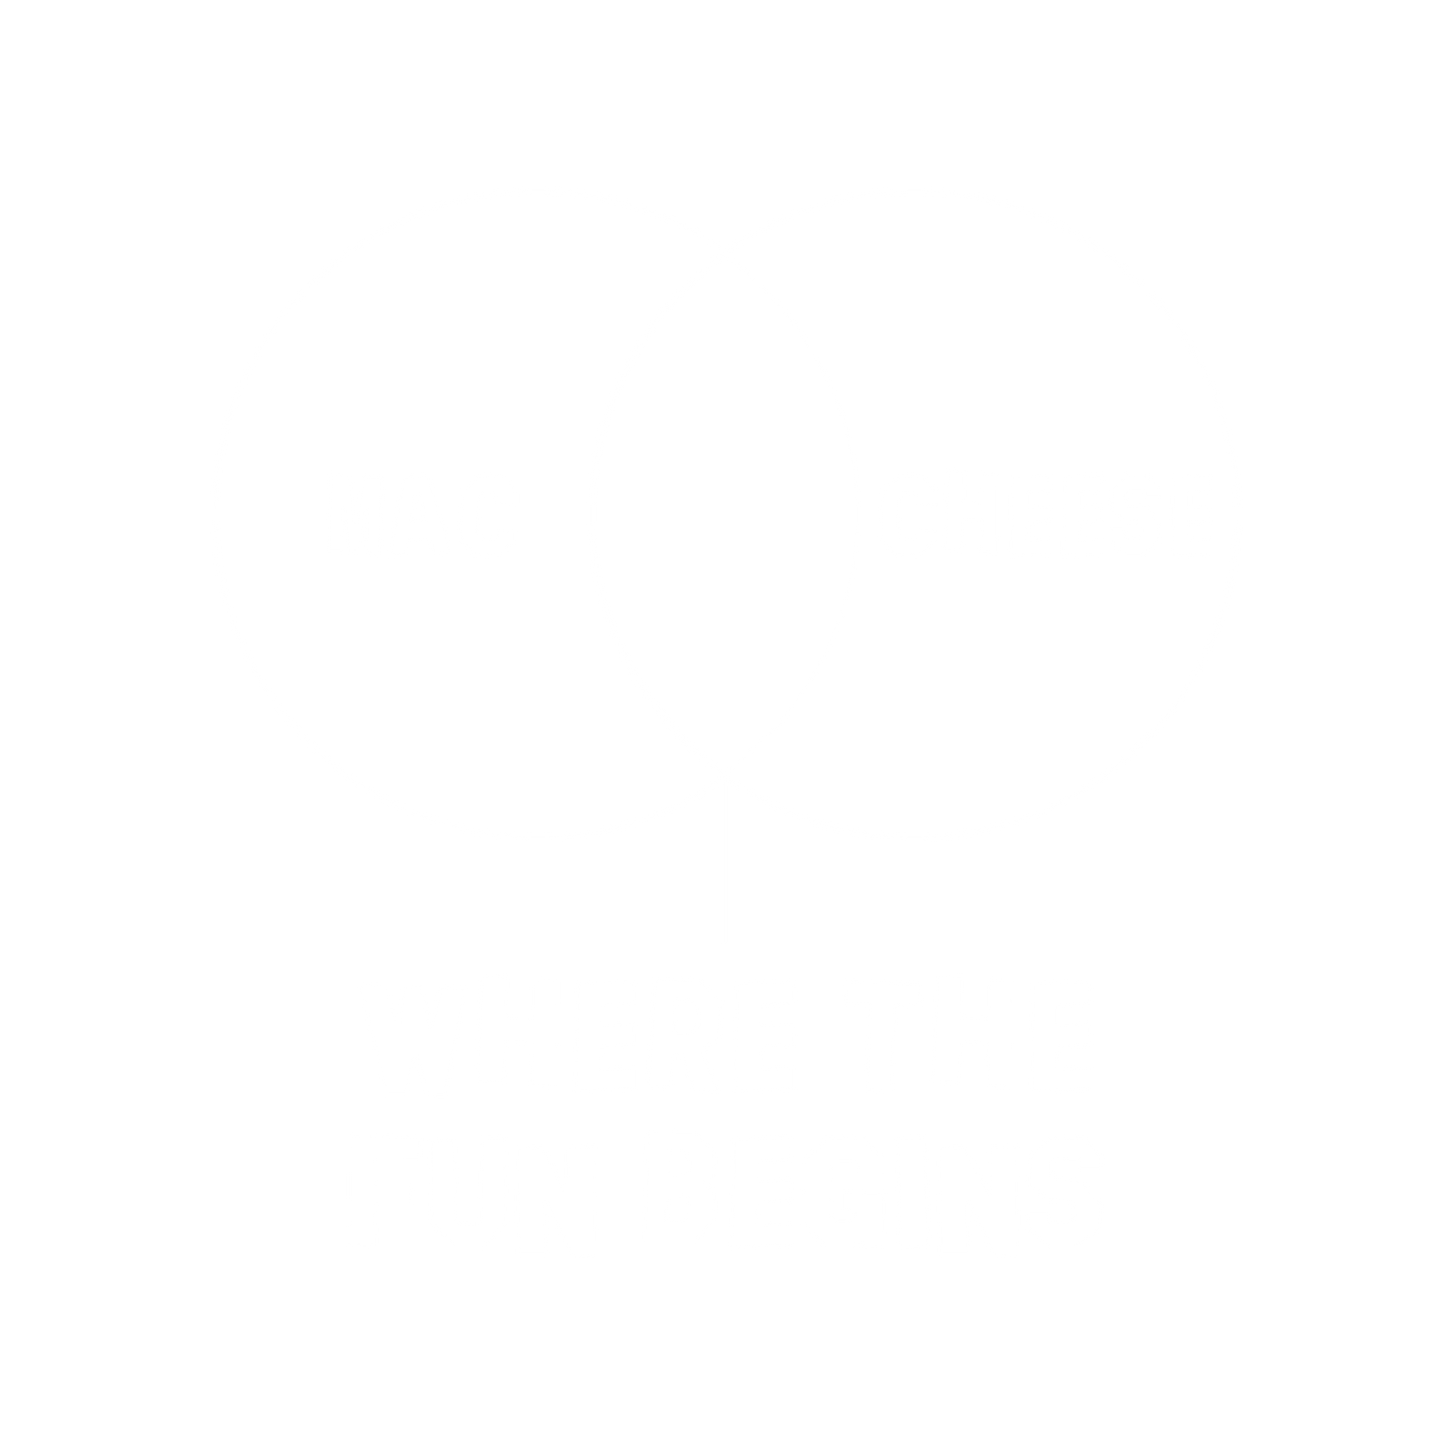 Mac cheese where the fun begins